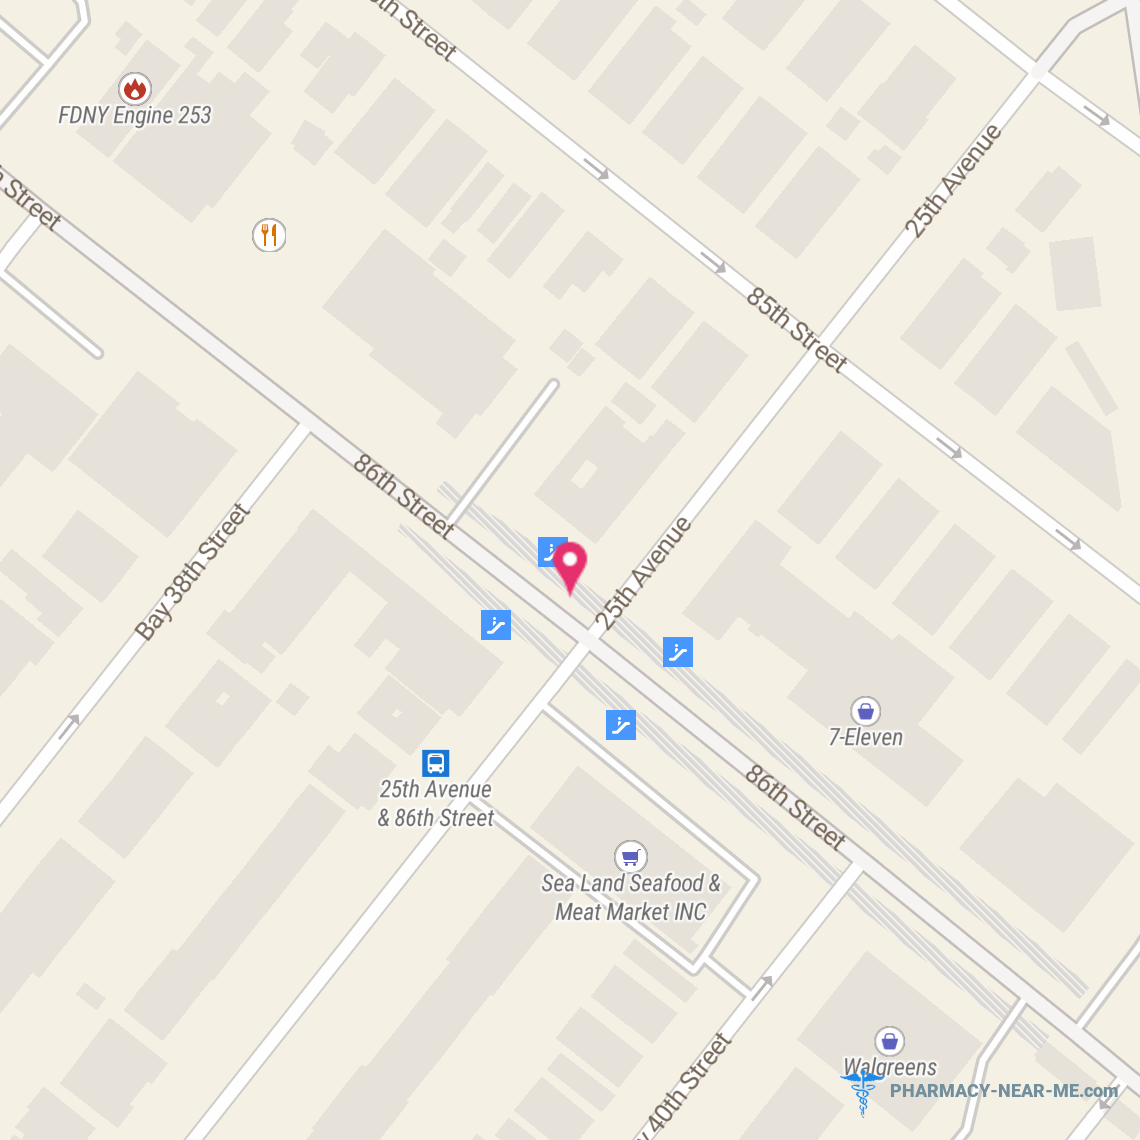 Nextgen Pharmacy - Pharmacy Open Hours, Phone, Reviews & Information: 2483 86th St, Brooklyn, NY 11214